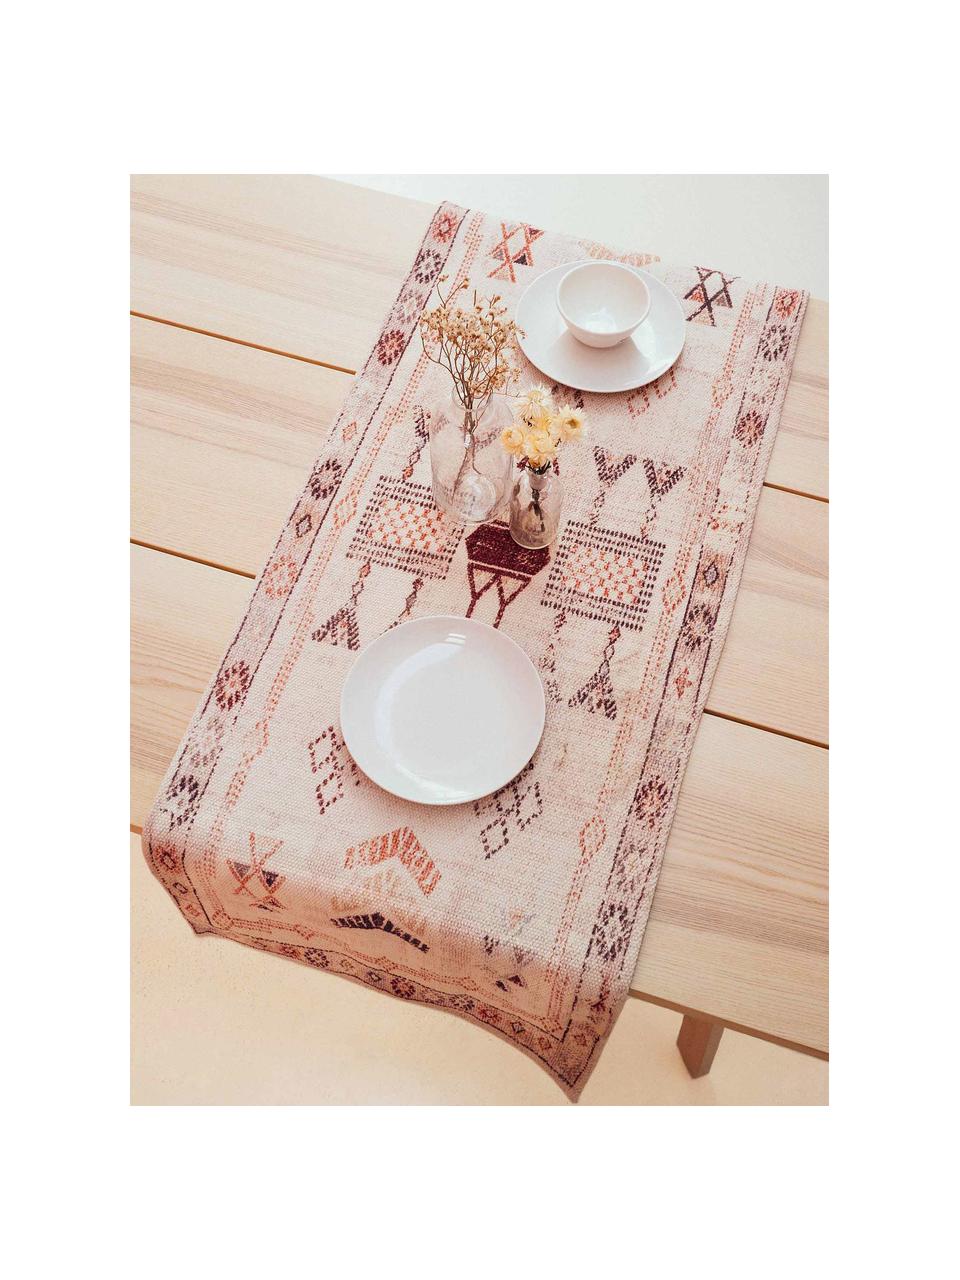 Baumwoll-Tischläufer Tanger mit Ethnomuster, 100% Baumwolle, Cremefarben,Terrakotta, 50 x 150 cm